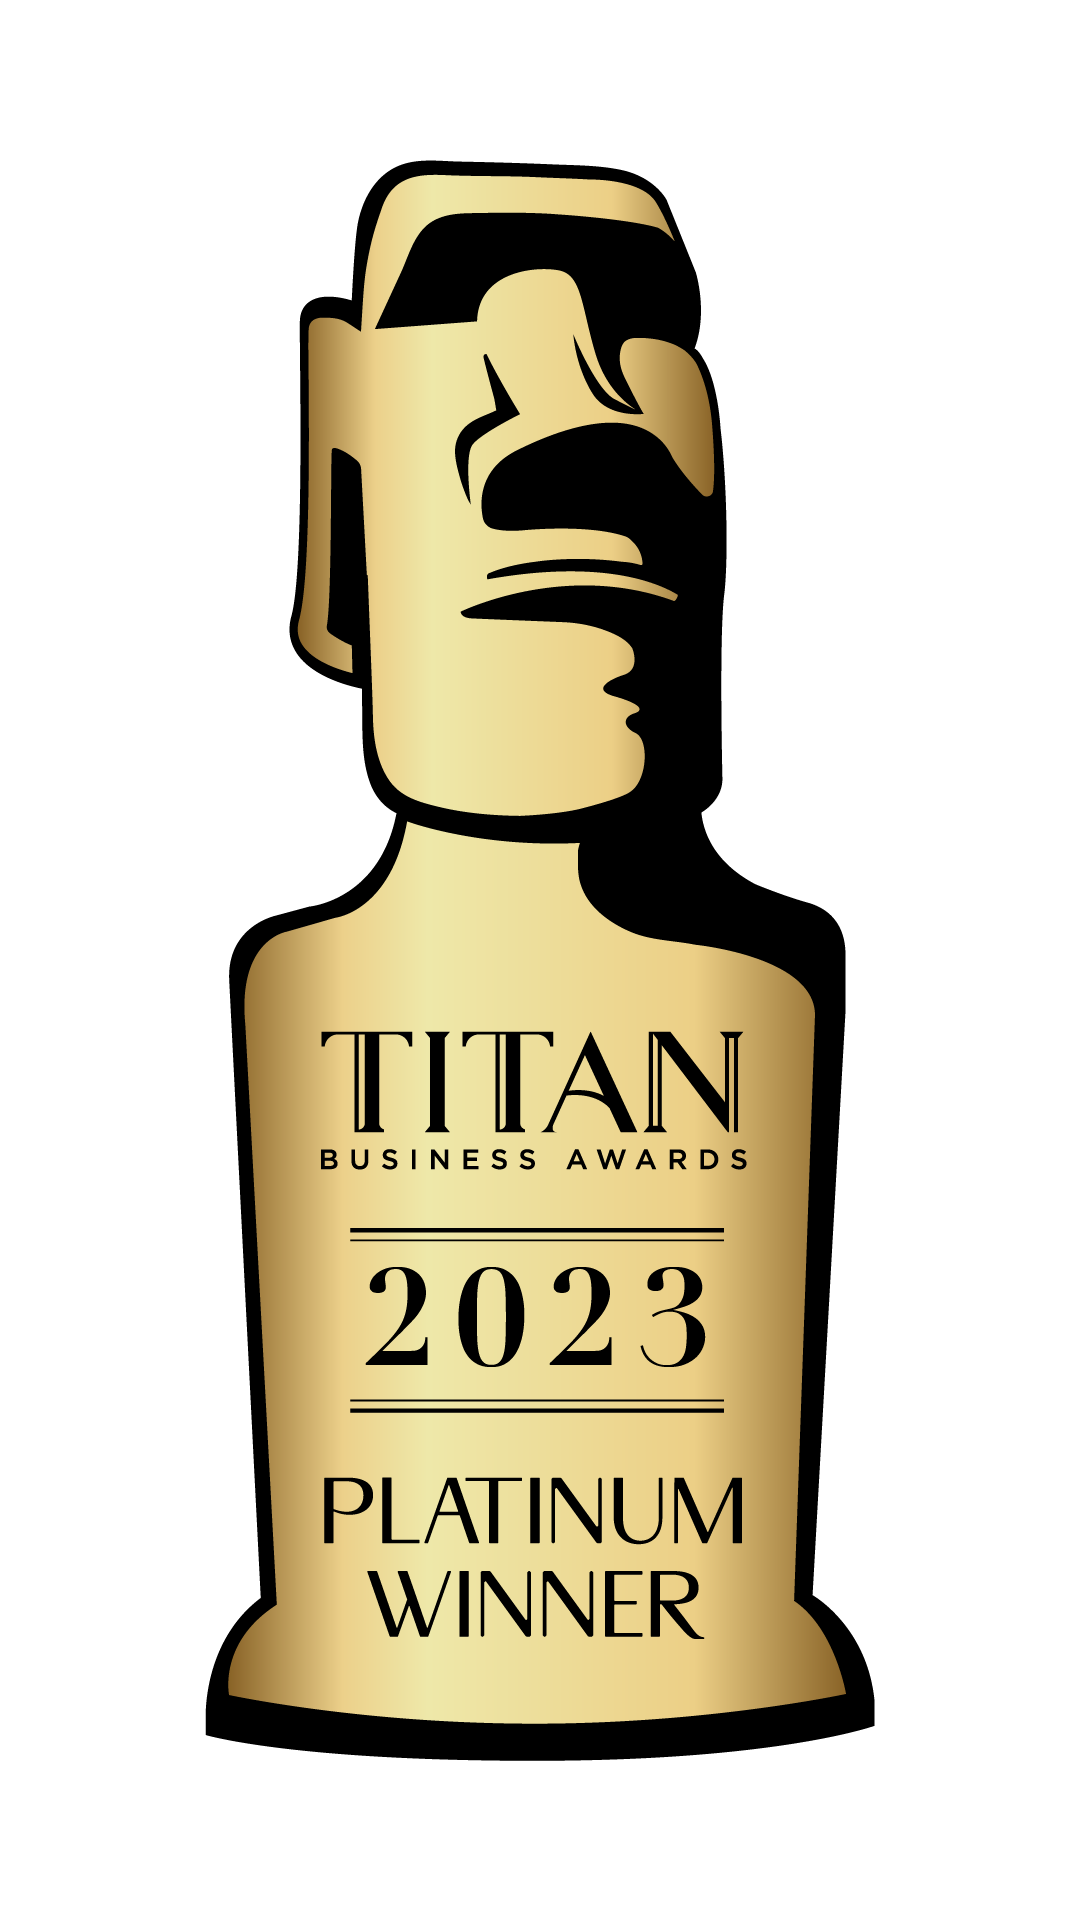 TITAN Platinum Winner 2023